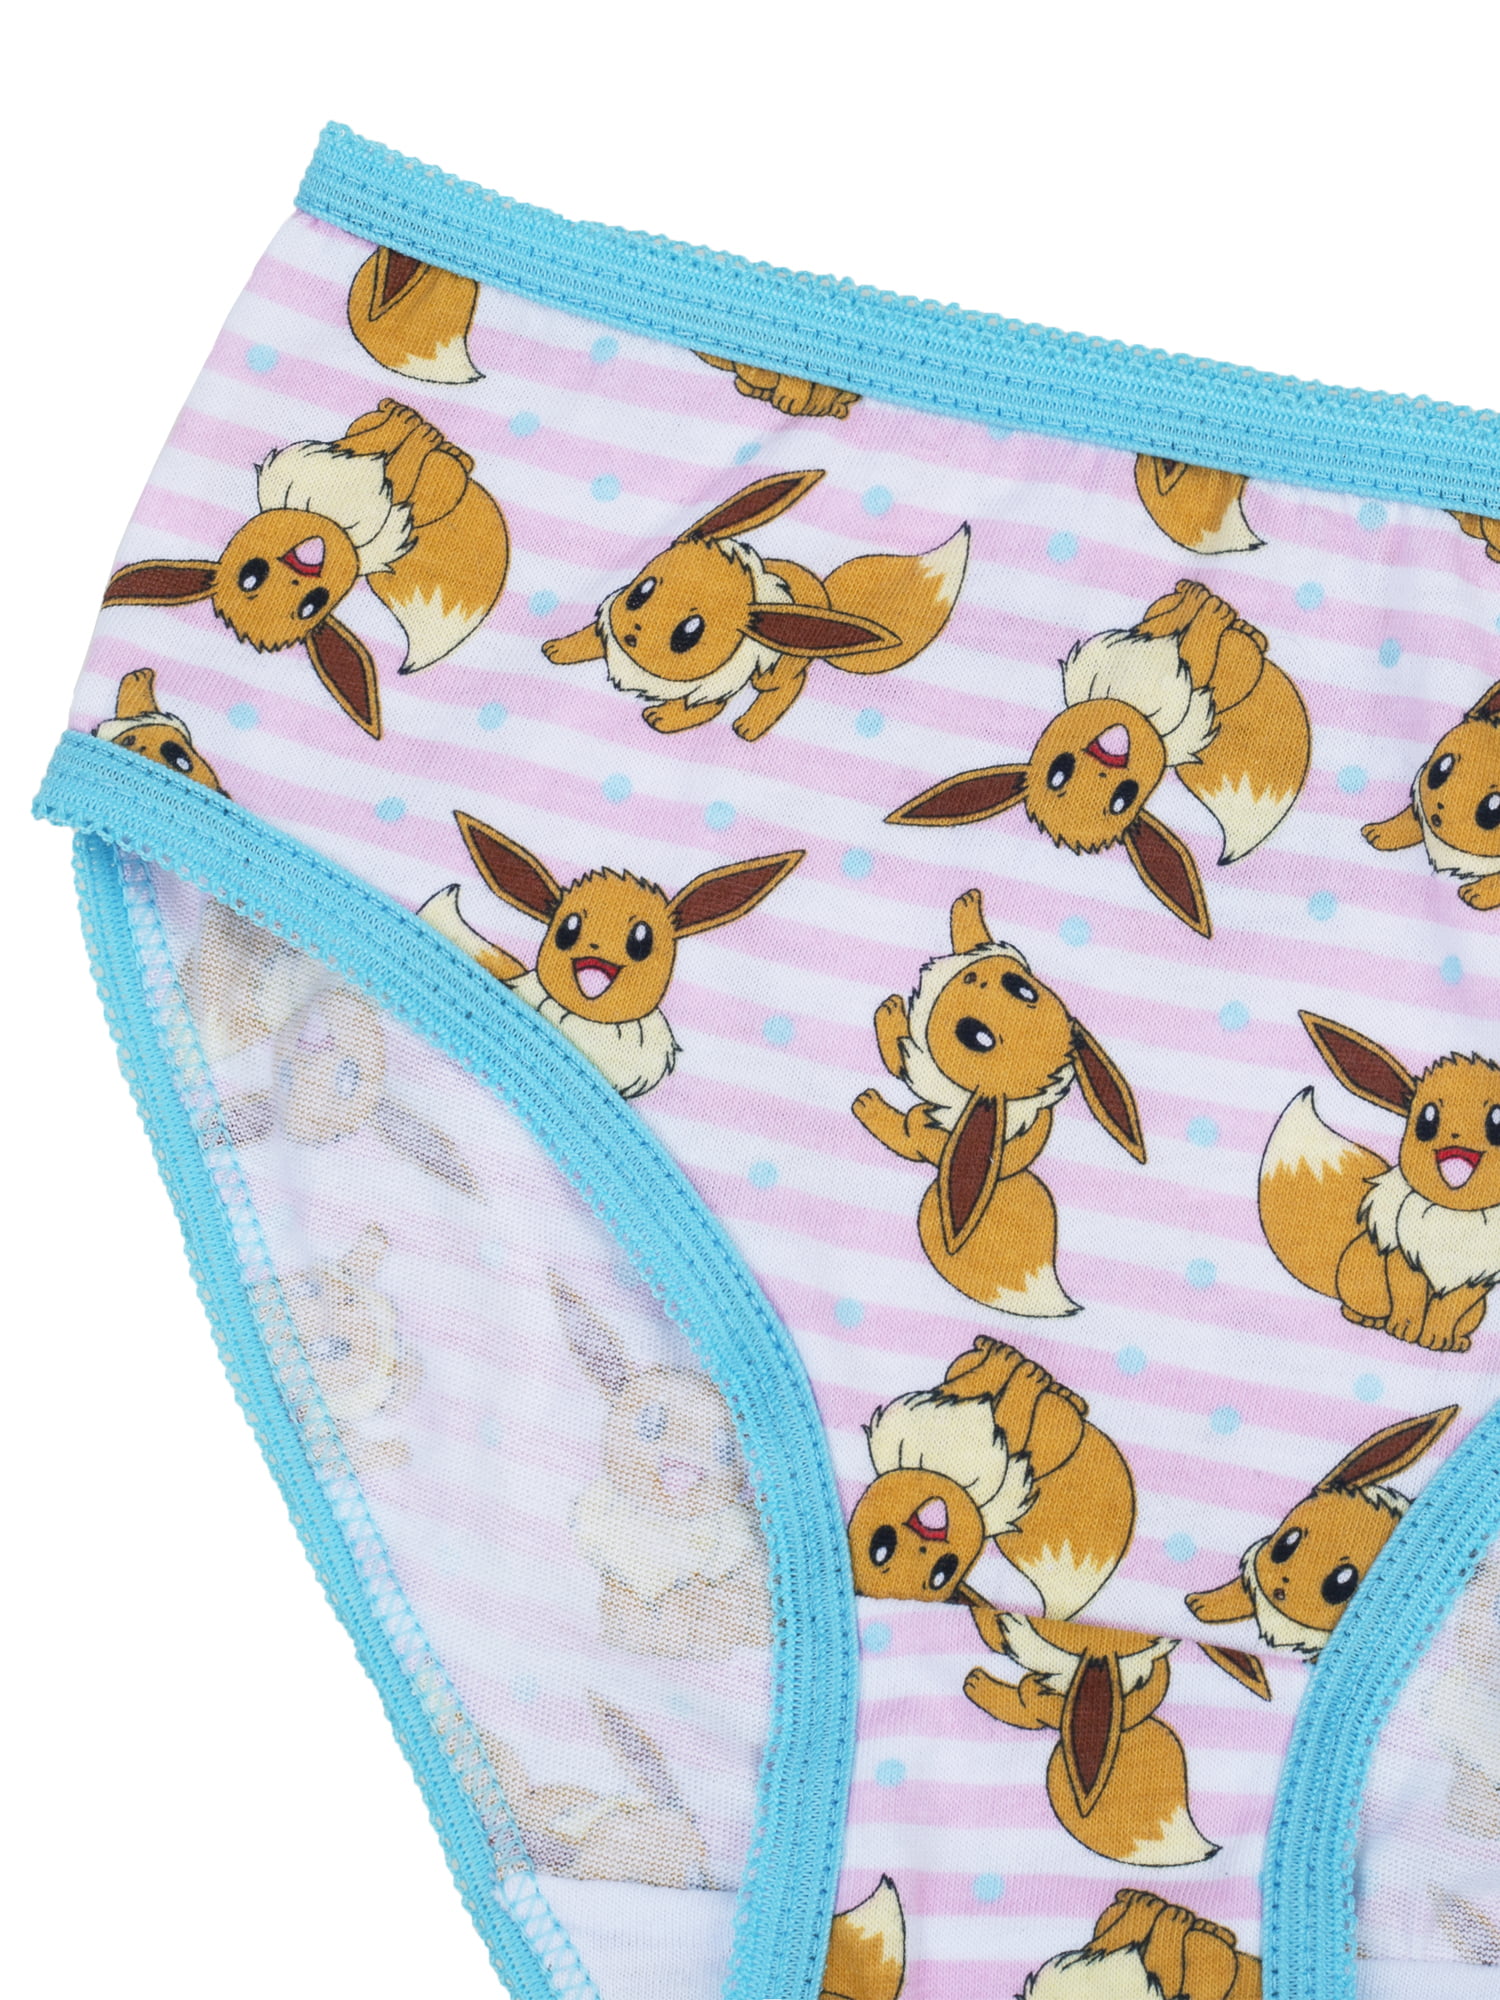 Pokemon Girls Underwear 7 Pack Briefs, Sizes 4-8 